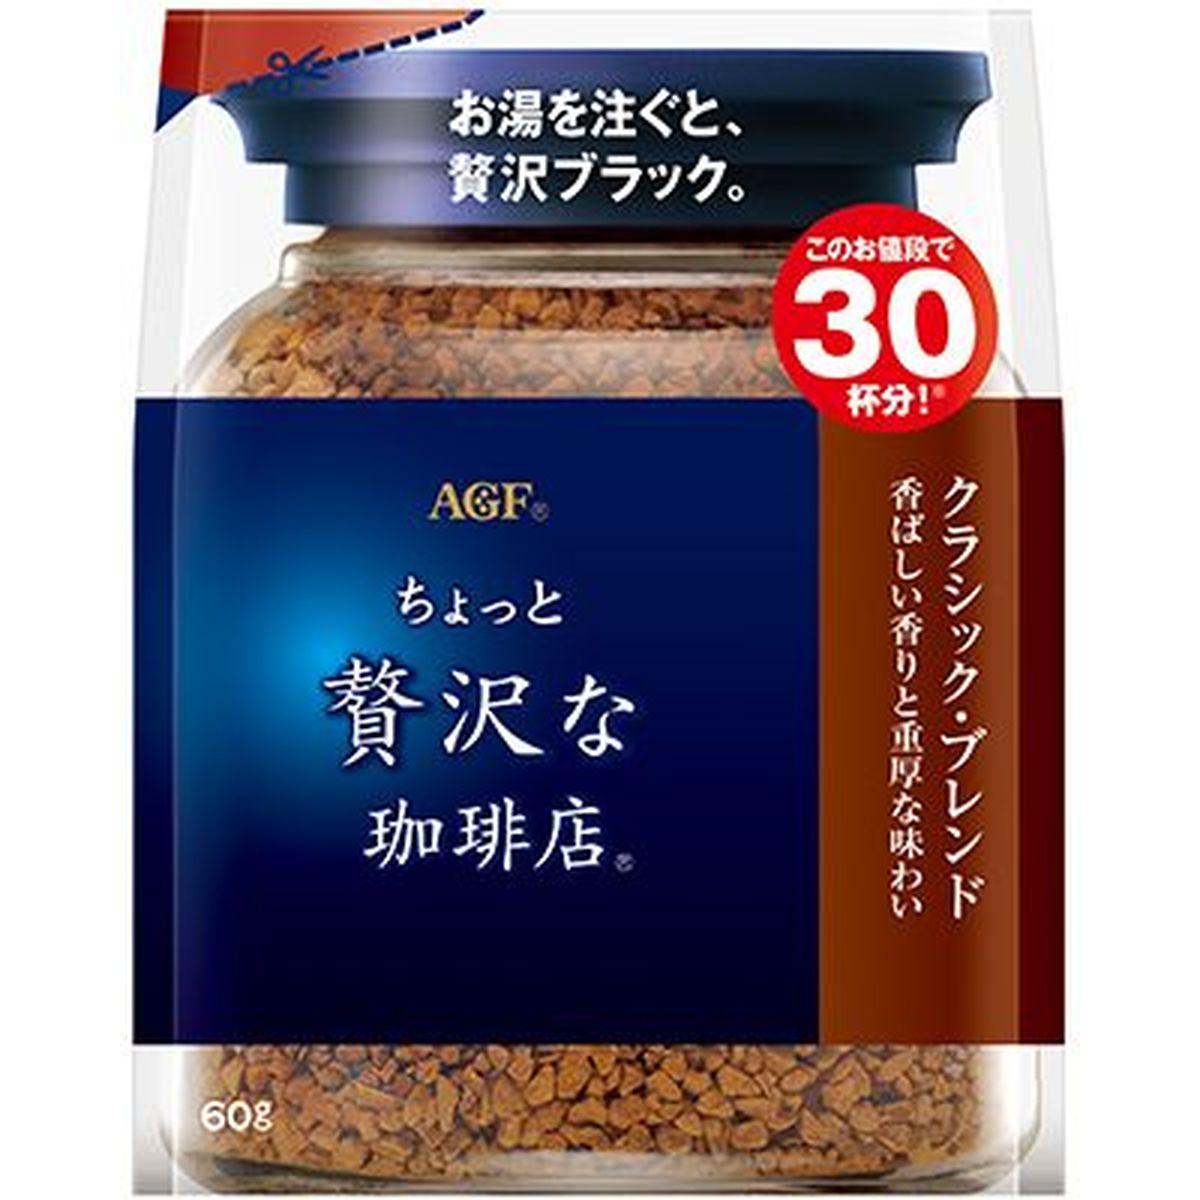 【12個入リ】AGF チョット贅沢ナ珈琲店 クラシック 袋 60g